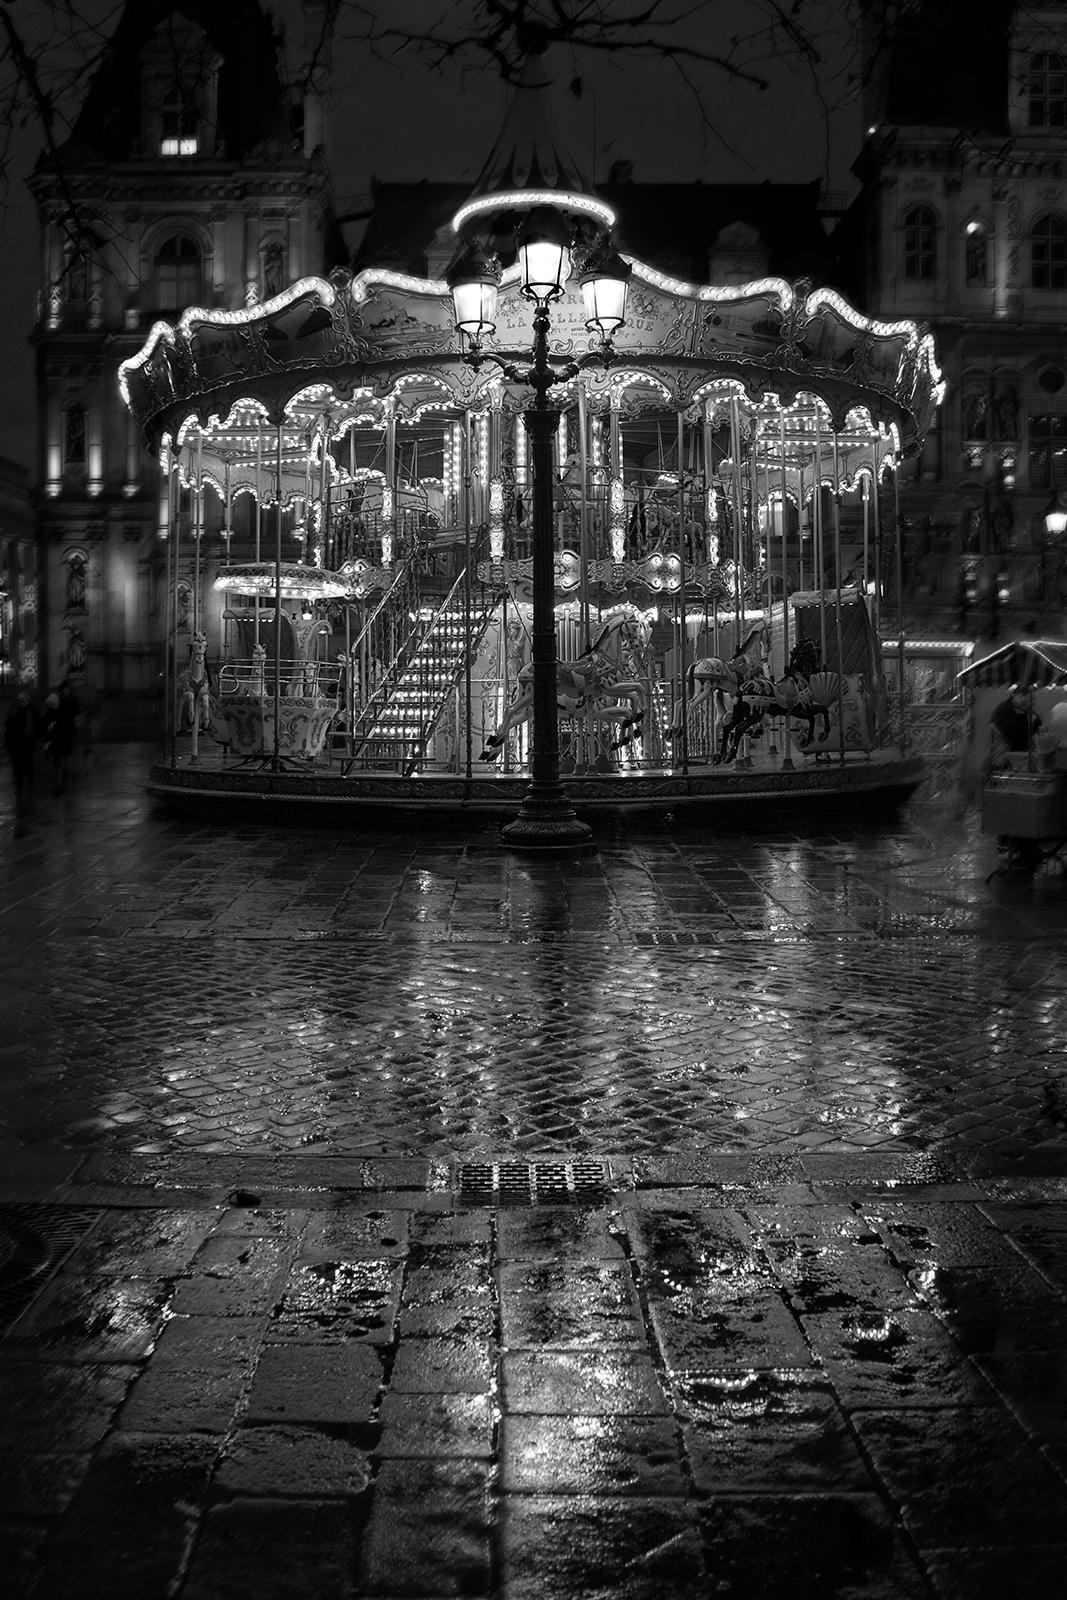 Carrousel - Impression de nature morte en édition limitée signée, photo en noir et blanc, Paris City